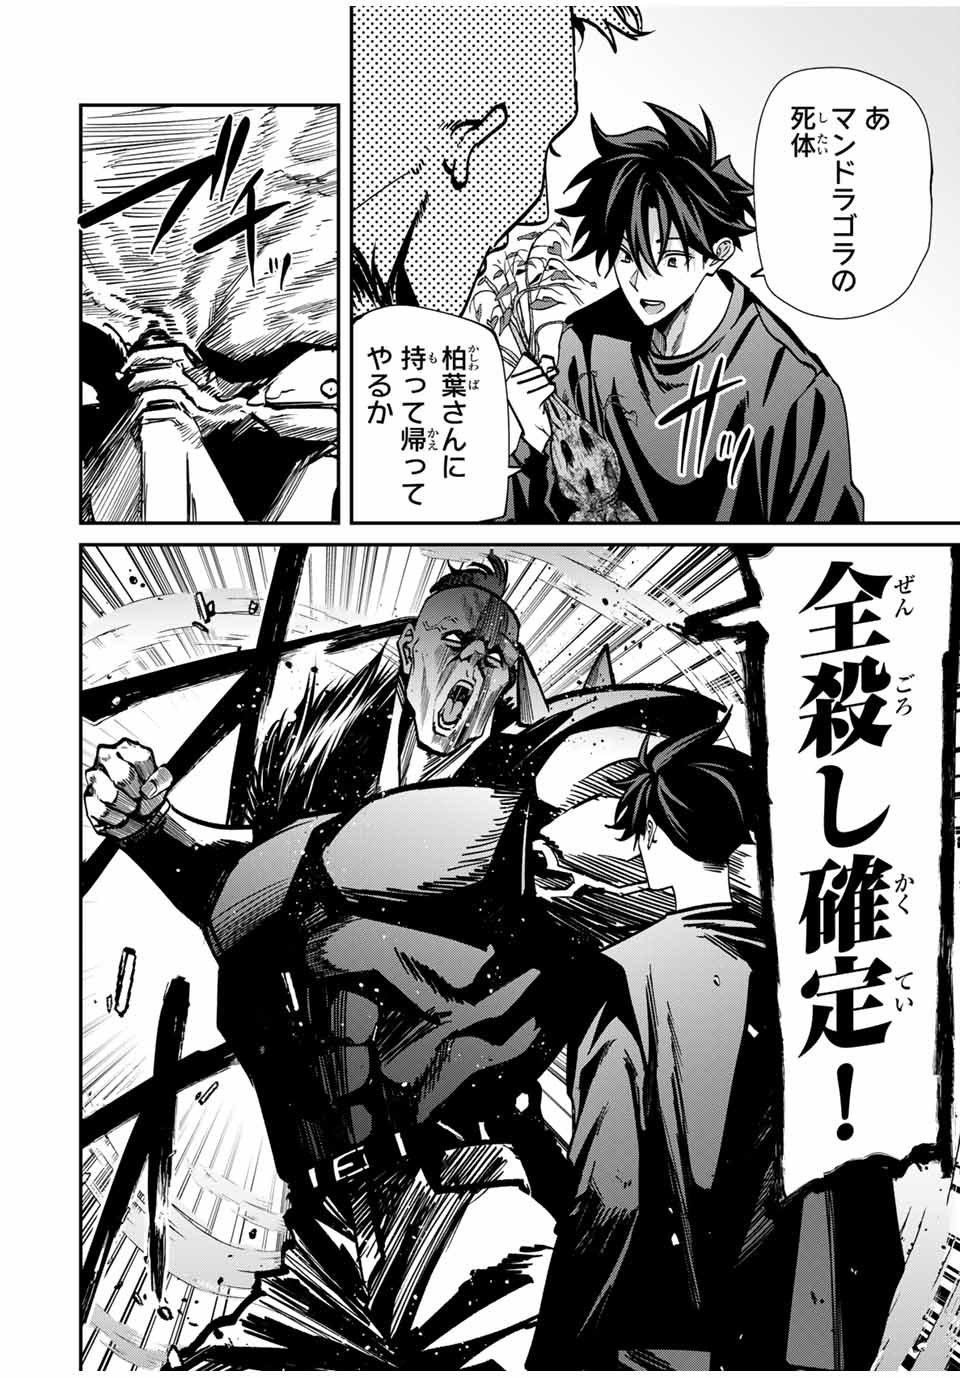 Kono Sekai ga Izure Horobu Koto wo, Ore dake ga Shitte Iru - Chapter 71 - Page 4